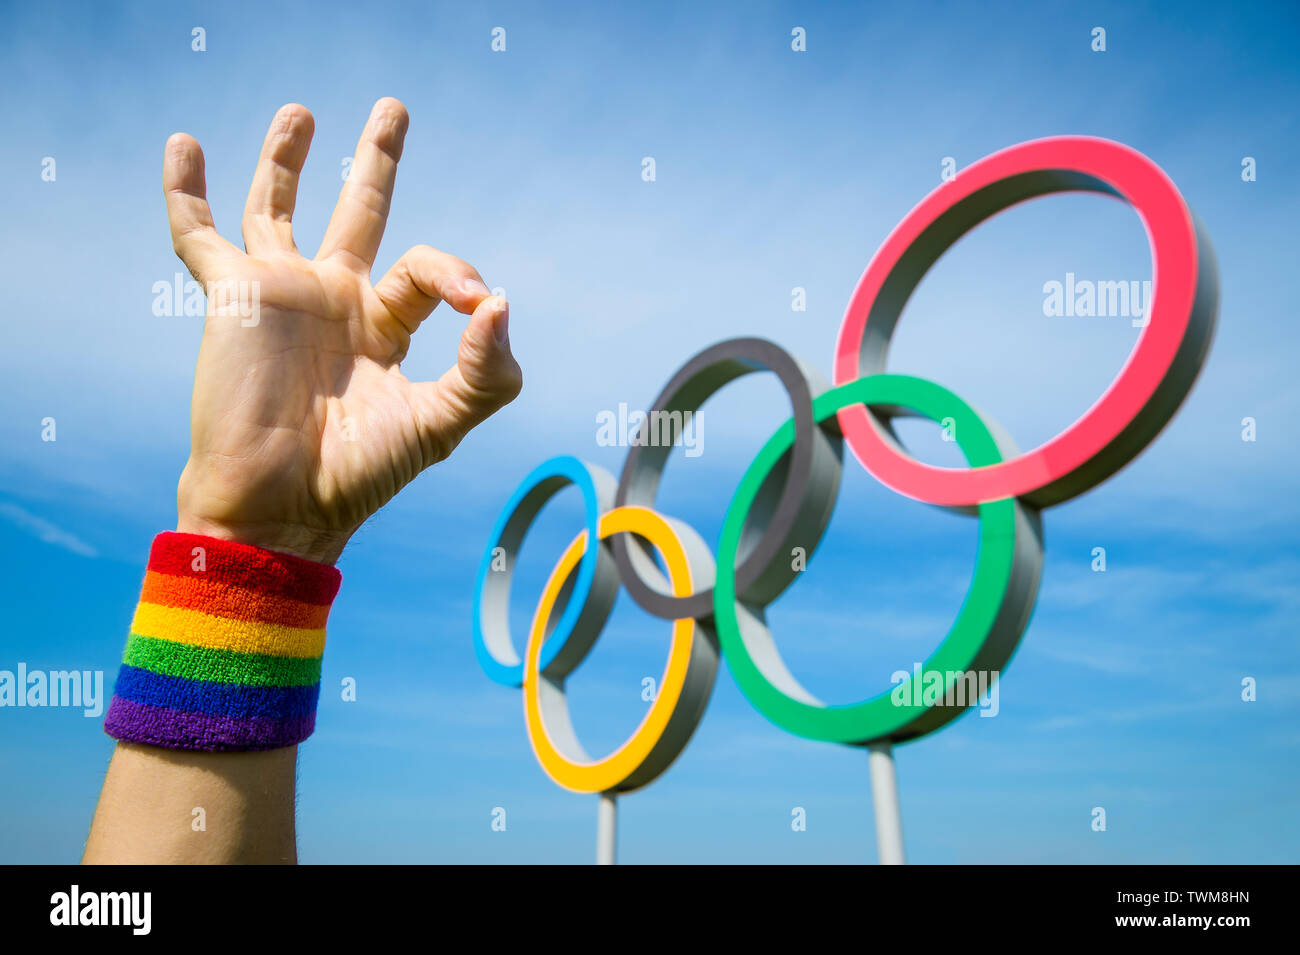 Londres - 4 mai 2019 : une main portant des gay pride rainbow bracelet de couleur fait un geste OK en face d'anneaux olympiques sous ciel bleu. Banque D'Images